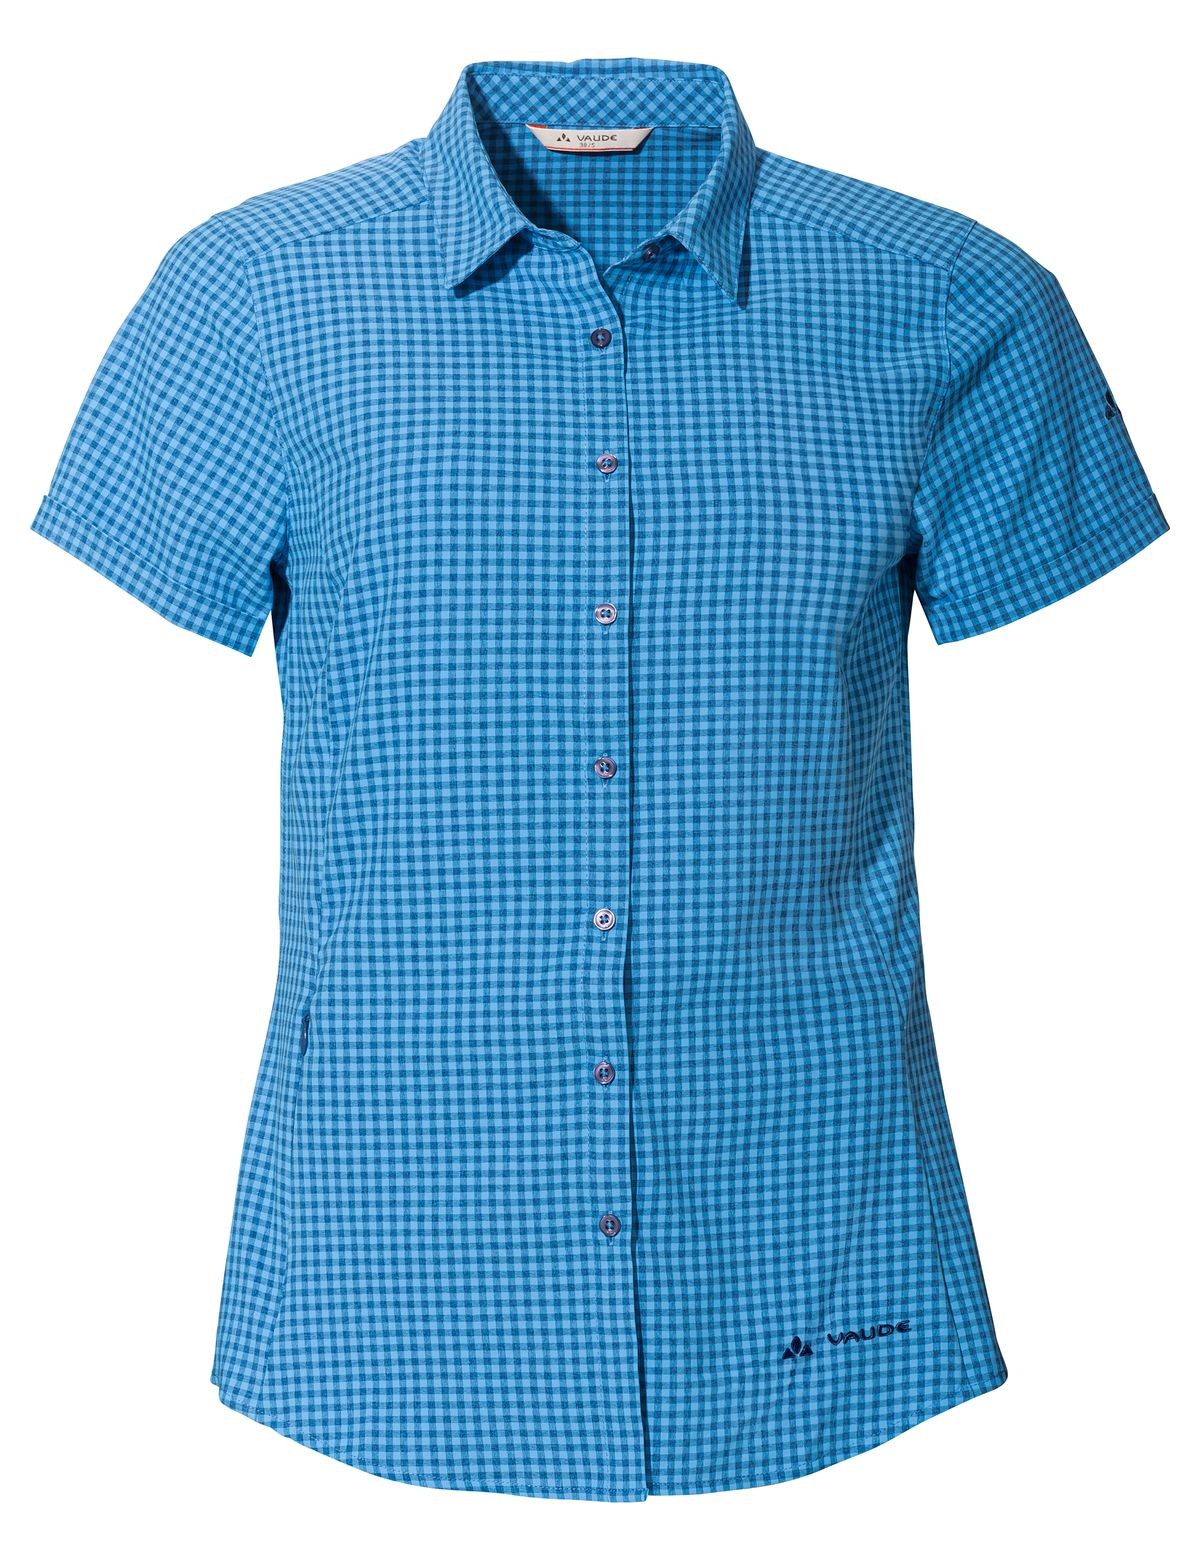 Seiland S/S Shirt Wm, ultramarine